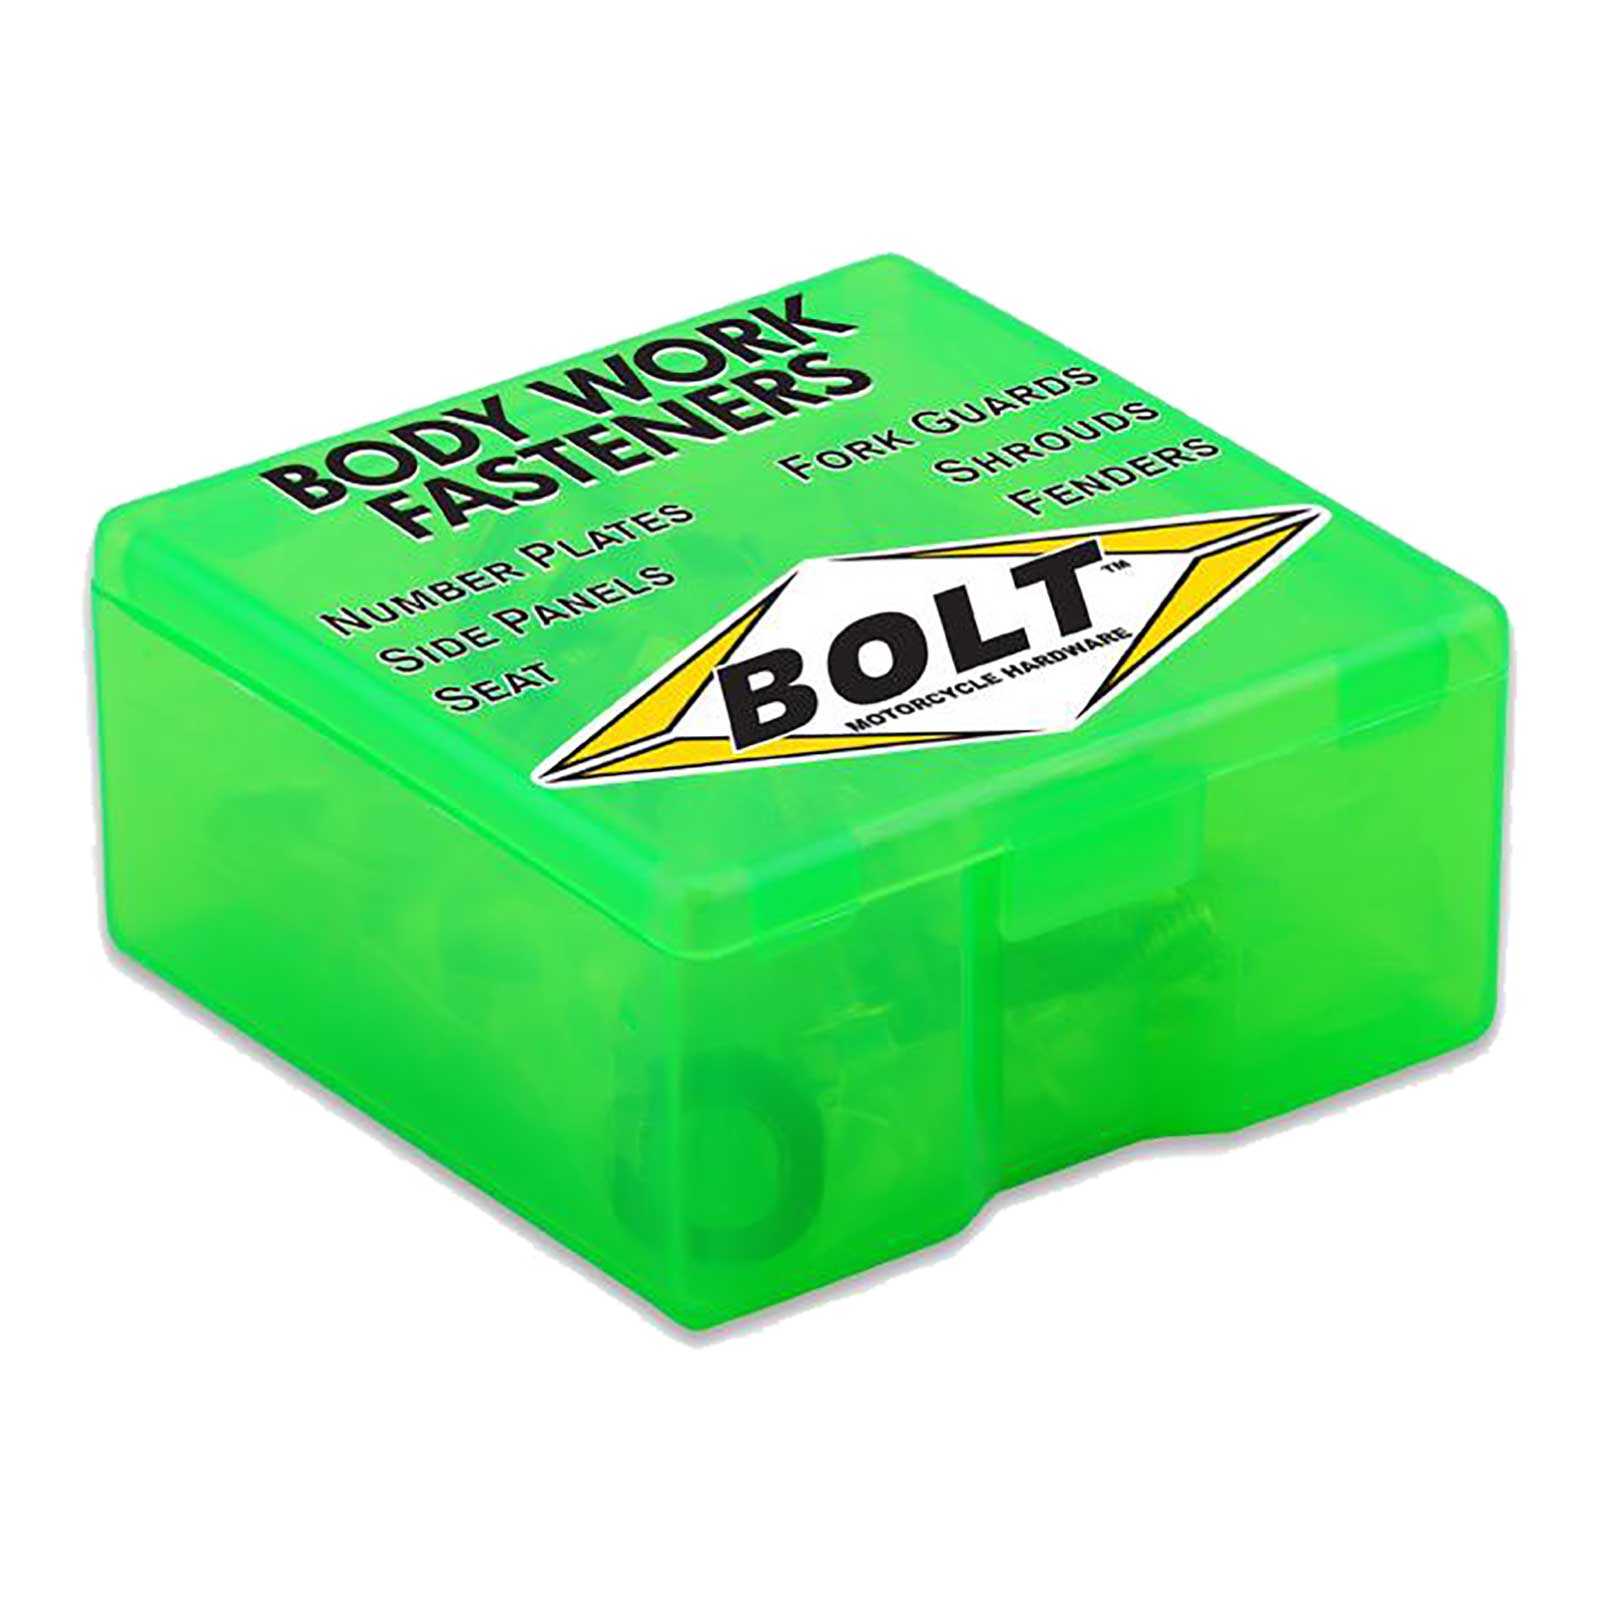 Bolt, BOLT BODY WORK FASTENER KIT KAW KX125/250 98-02